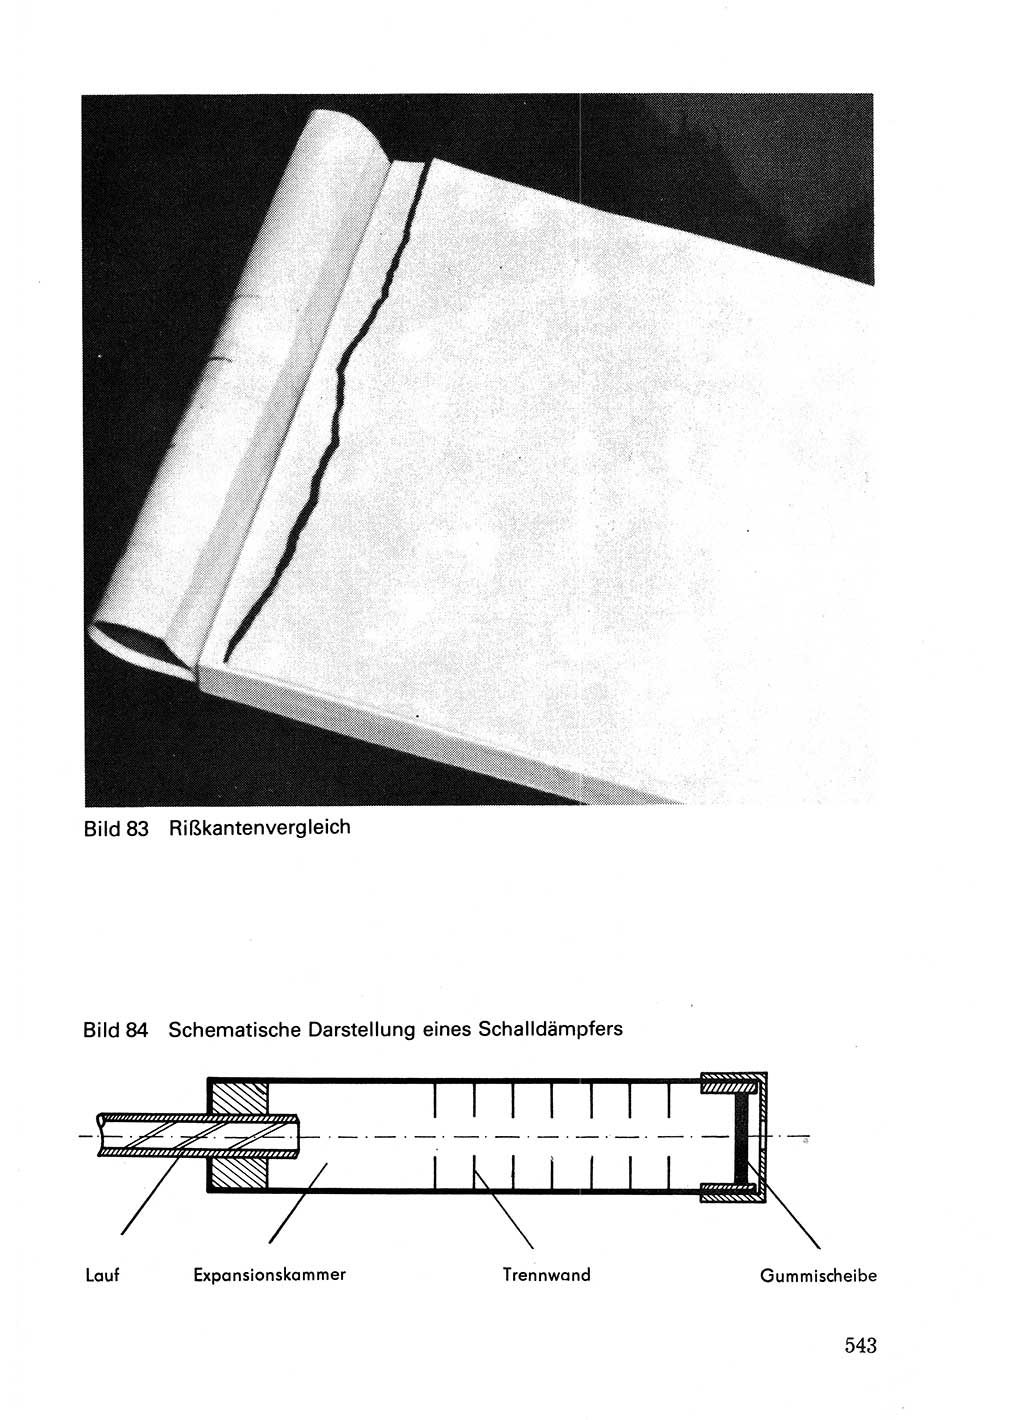 Wörterbuch der sozialistischen Kriminalistik [Deutsche Demokratische Republik (DDR)] 1981, Seite 542 (Wb. soz. Krim. DDR 1981, S. 542)